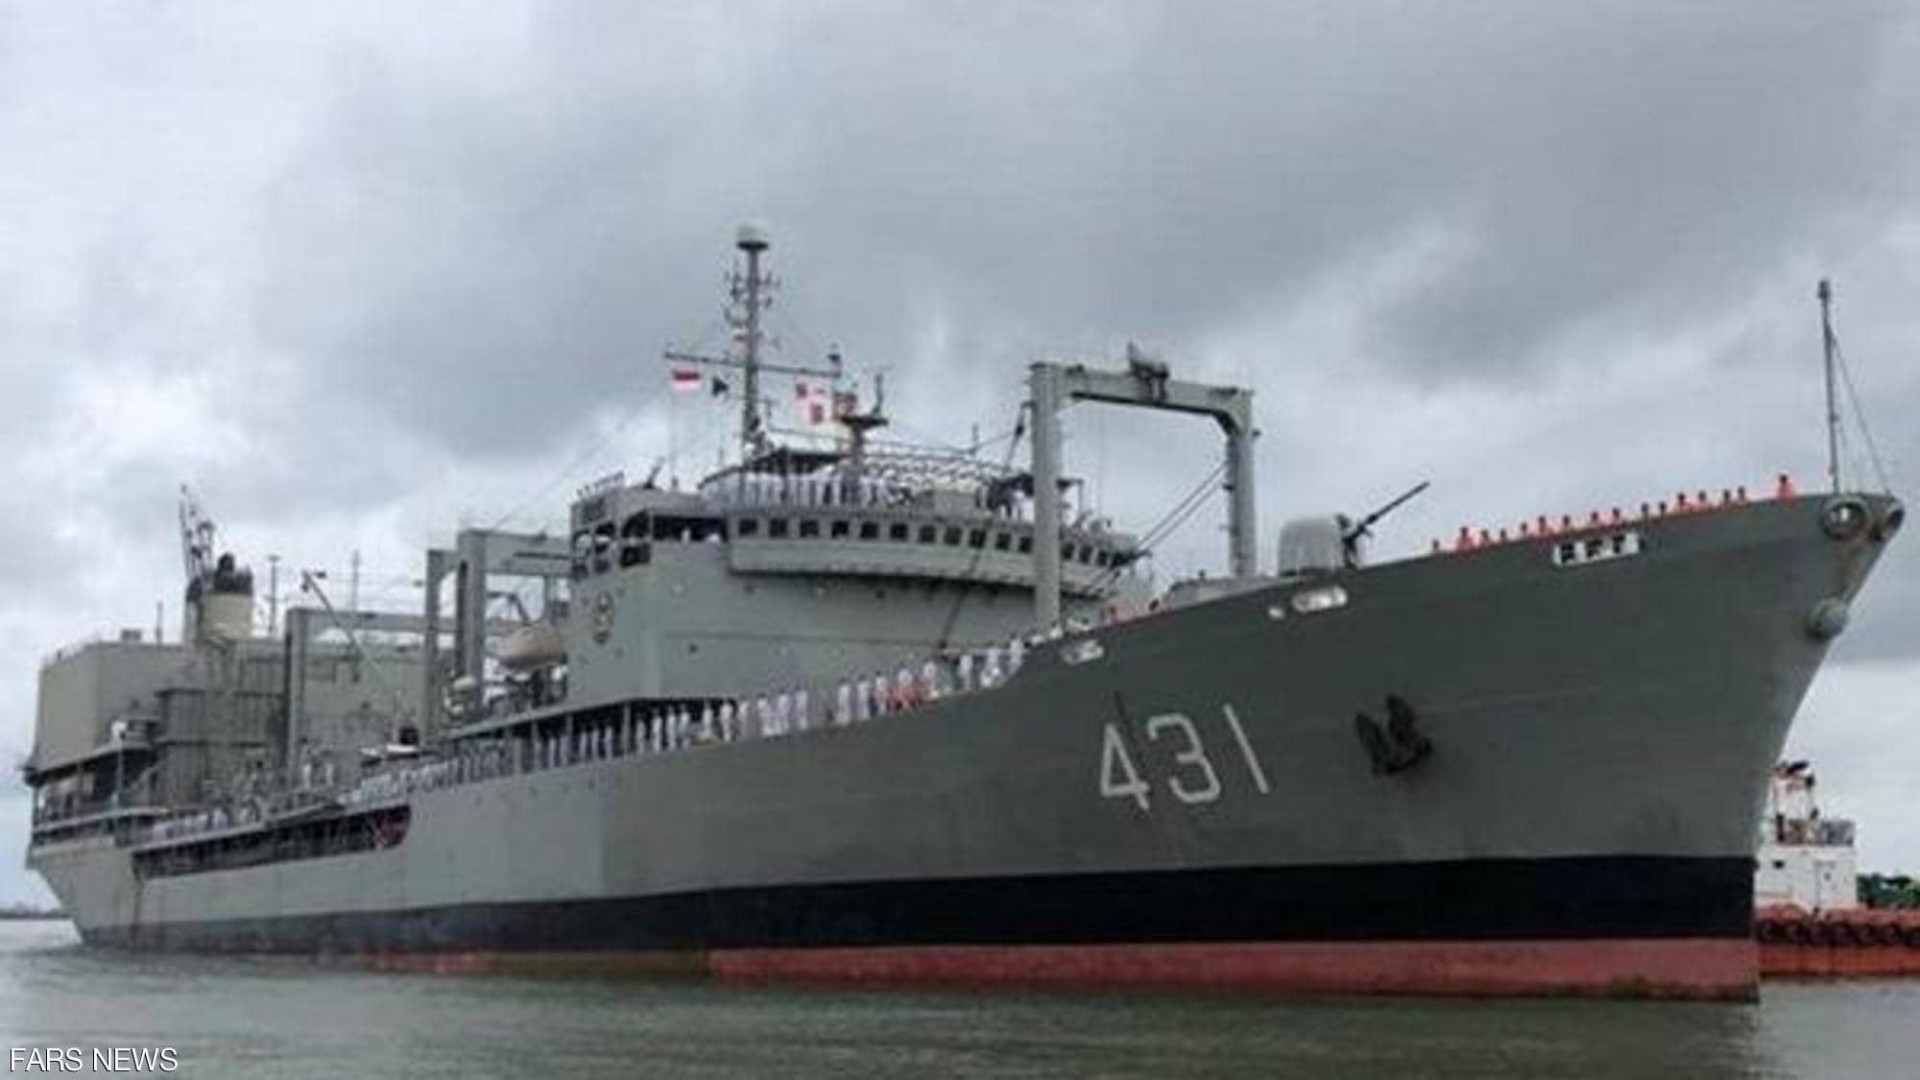 100 سفينة بقيادة الولايات المتحدة وبرنامج "تجريبي" لمواجهة مسيّرات إيران في الخليج 